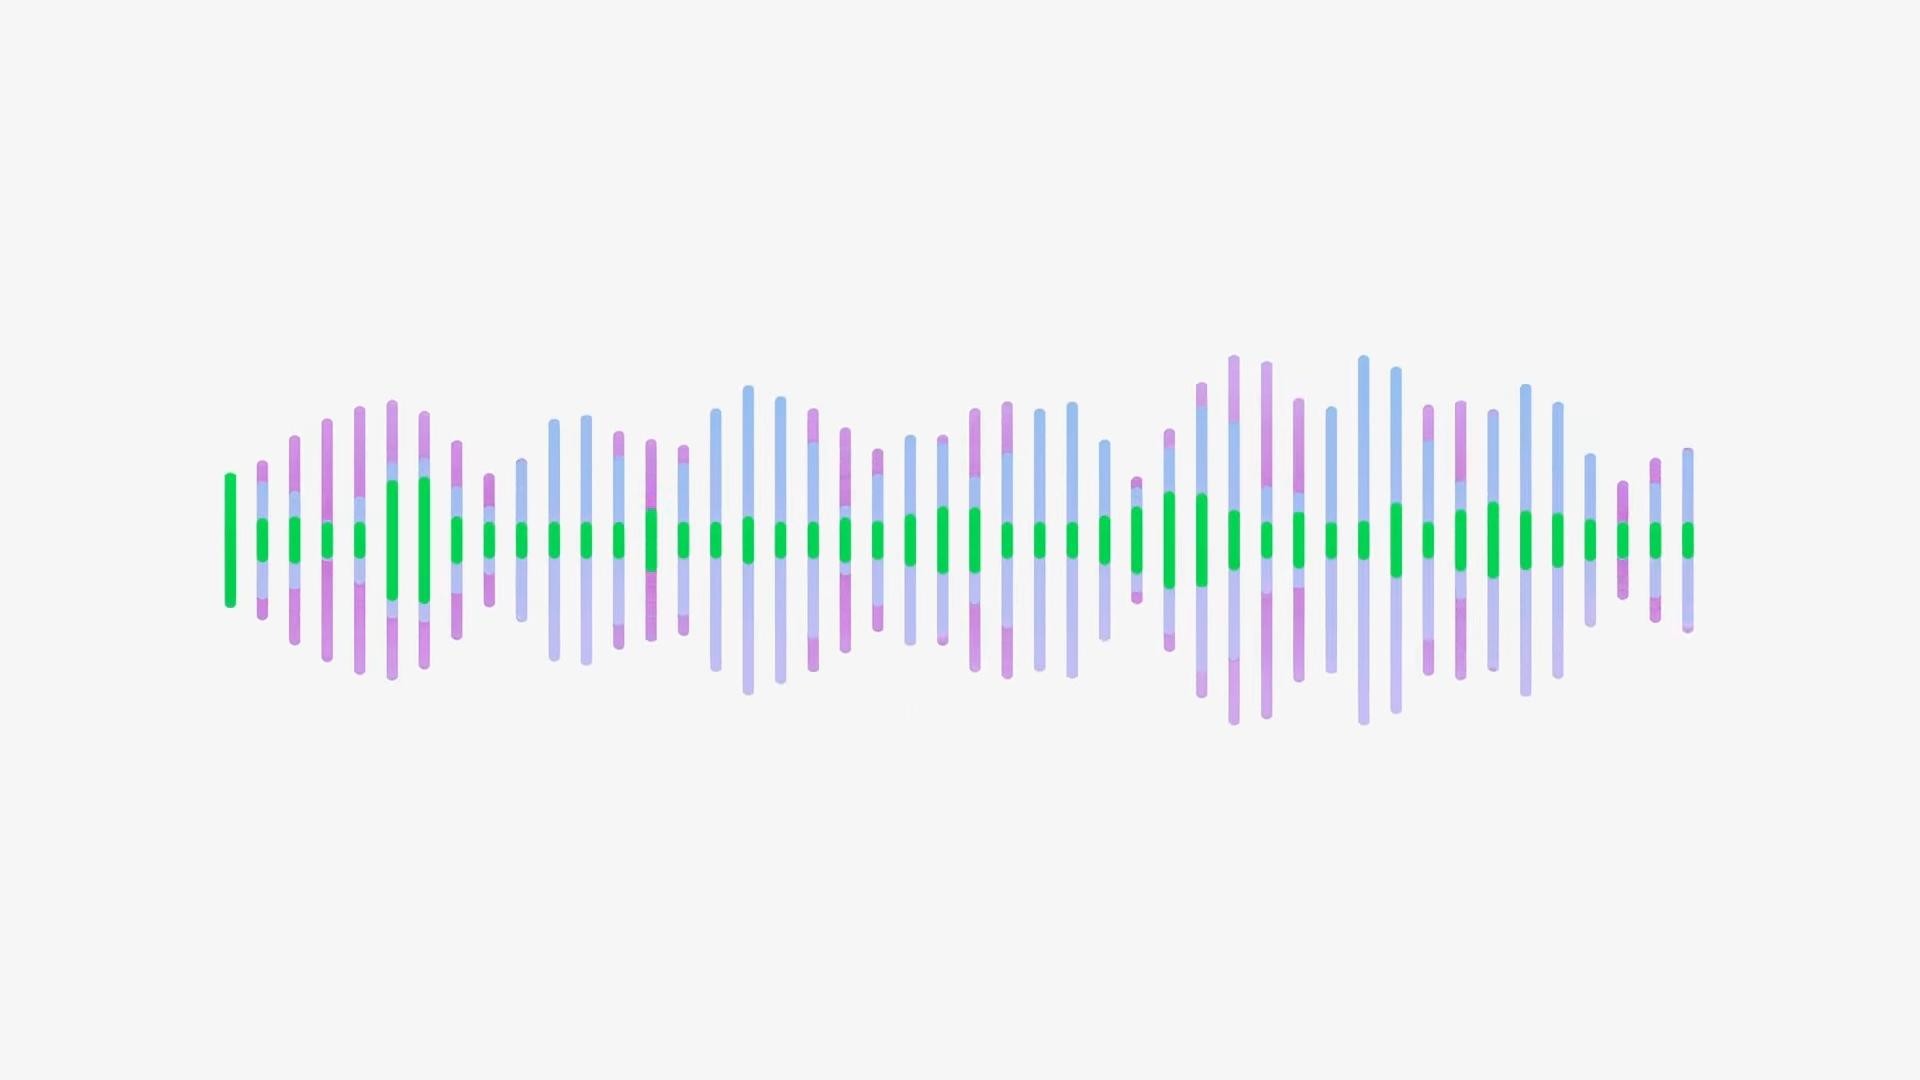 Geniş spektrumlu bir mikrofon girişinin dalga biçimini gösteren bir resim